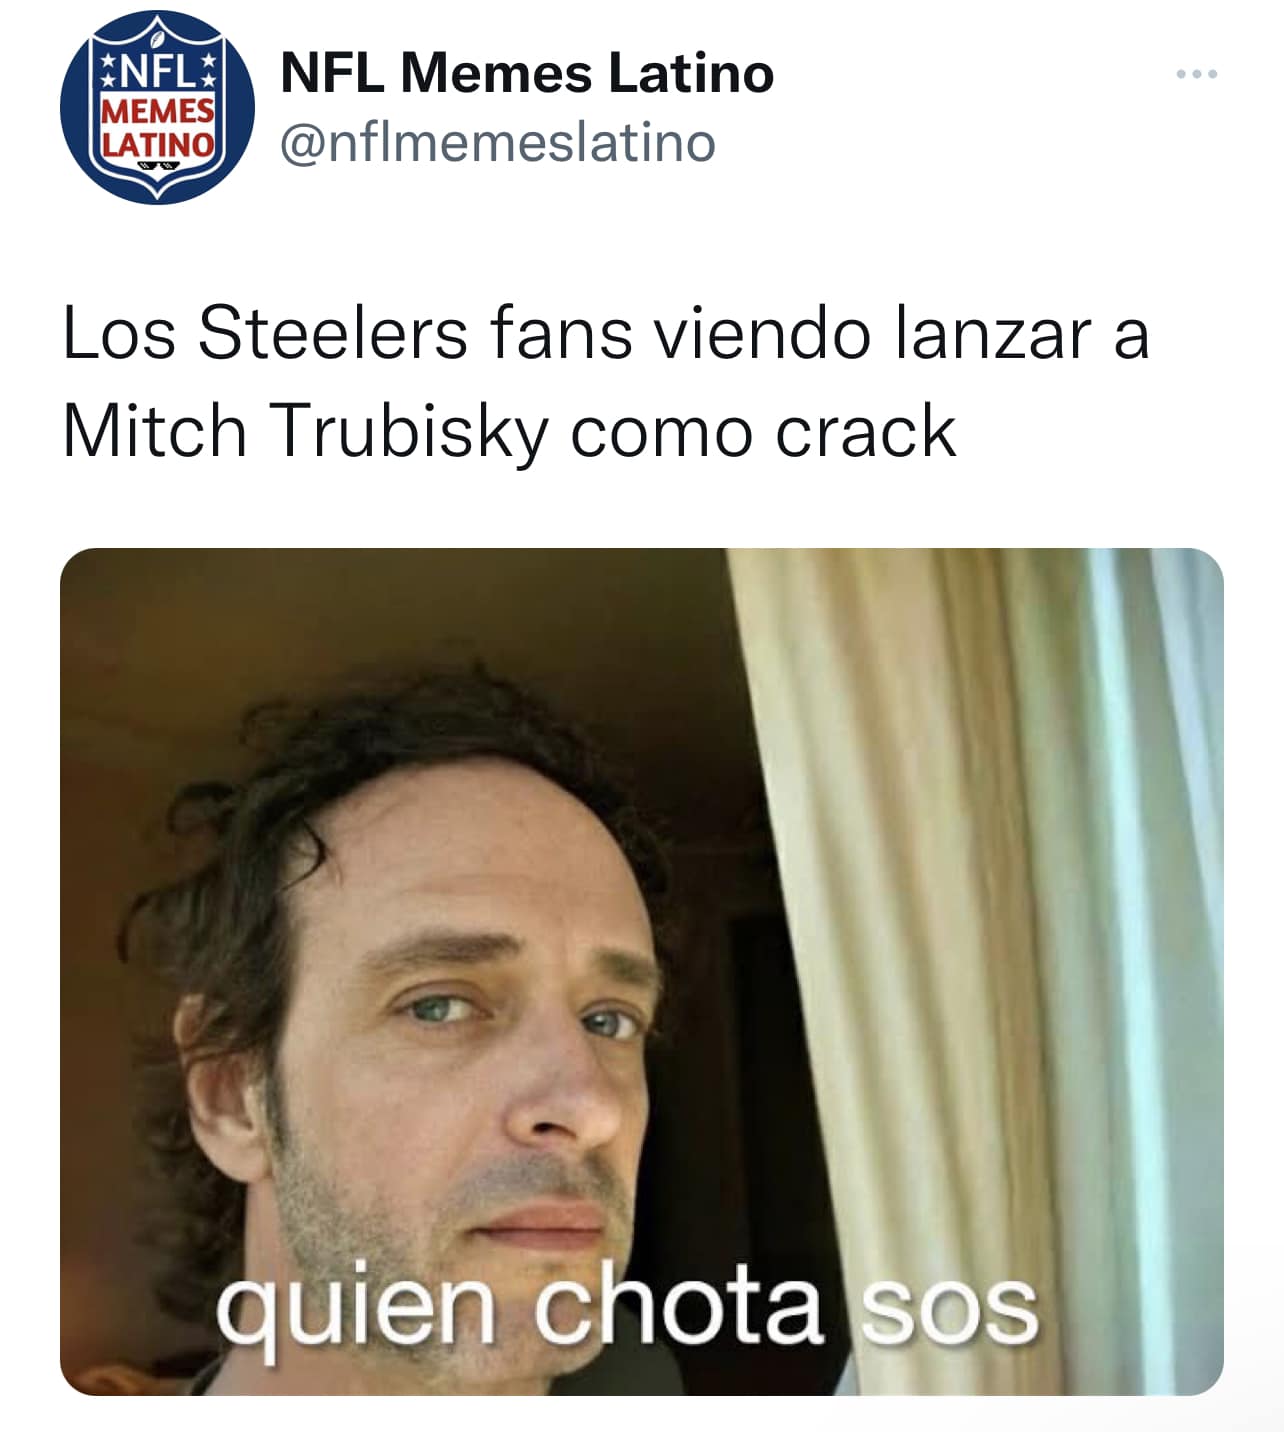 NFL Latino